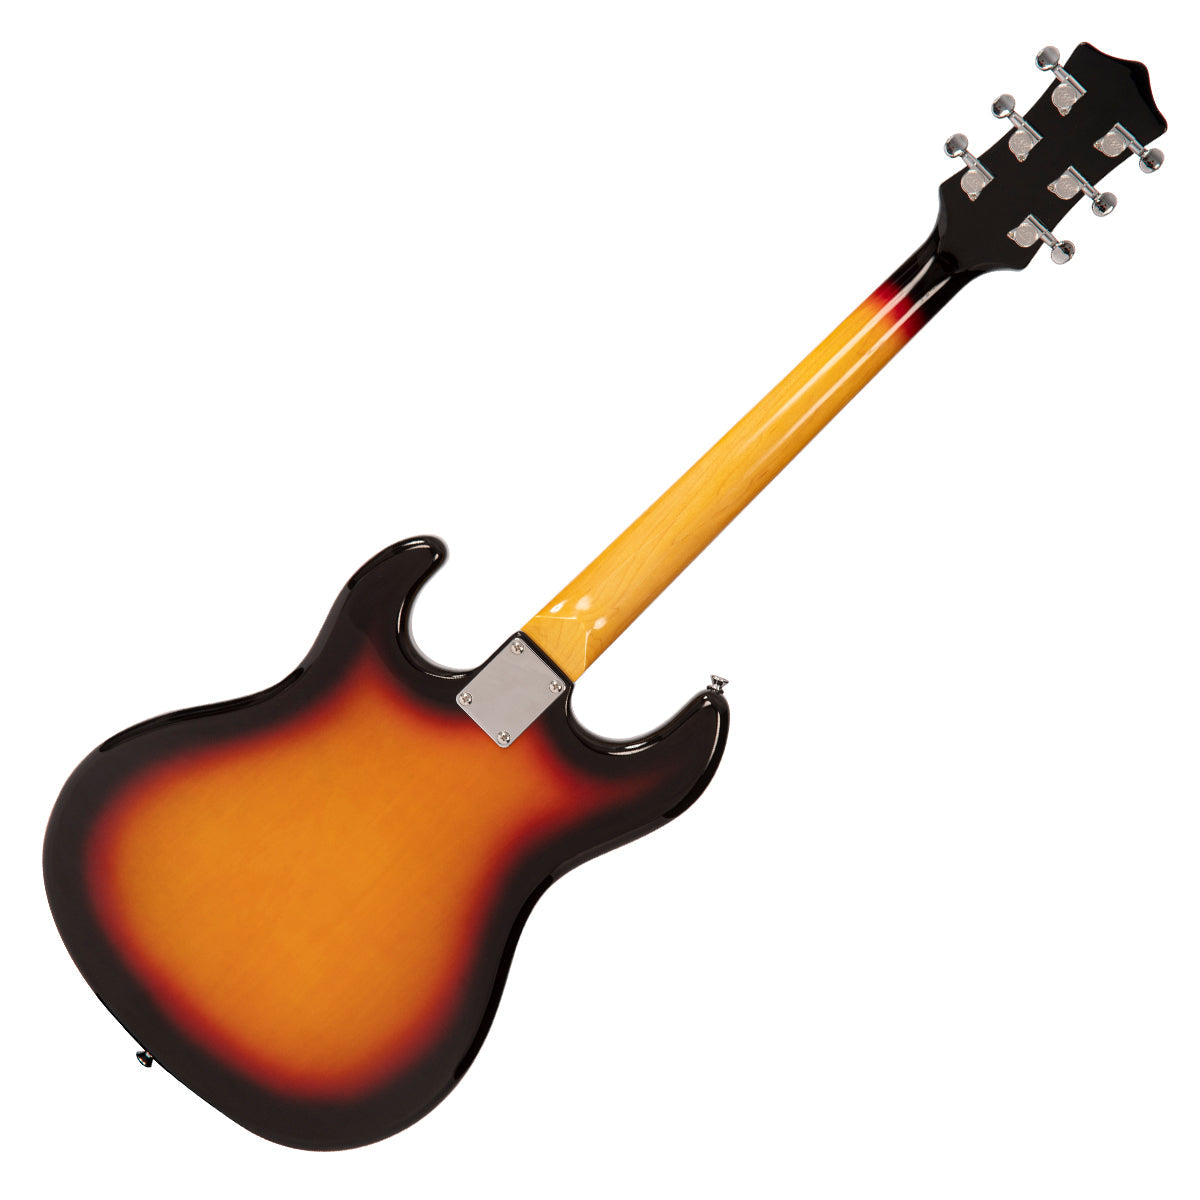 Rapier Saffire Electric Guitar ~ Sunburst, Electric Guitar for sale at Richards Guitars.